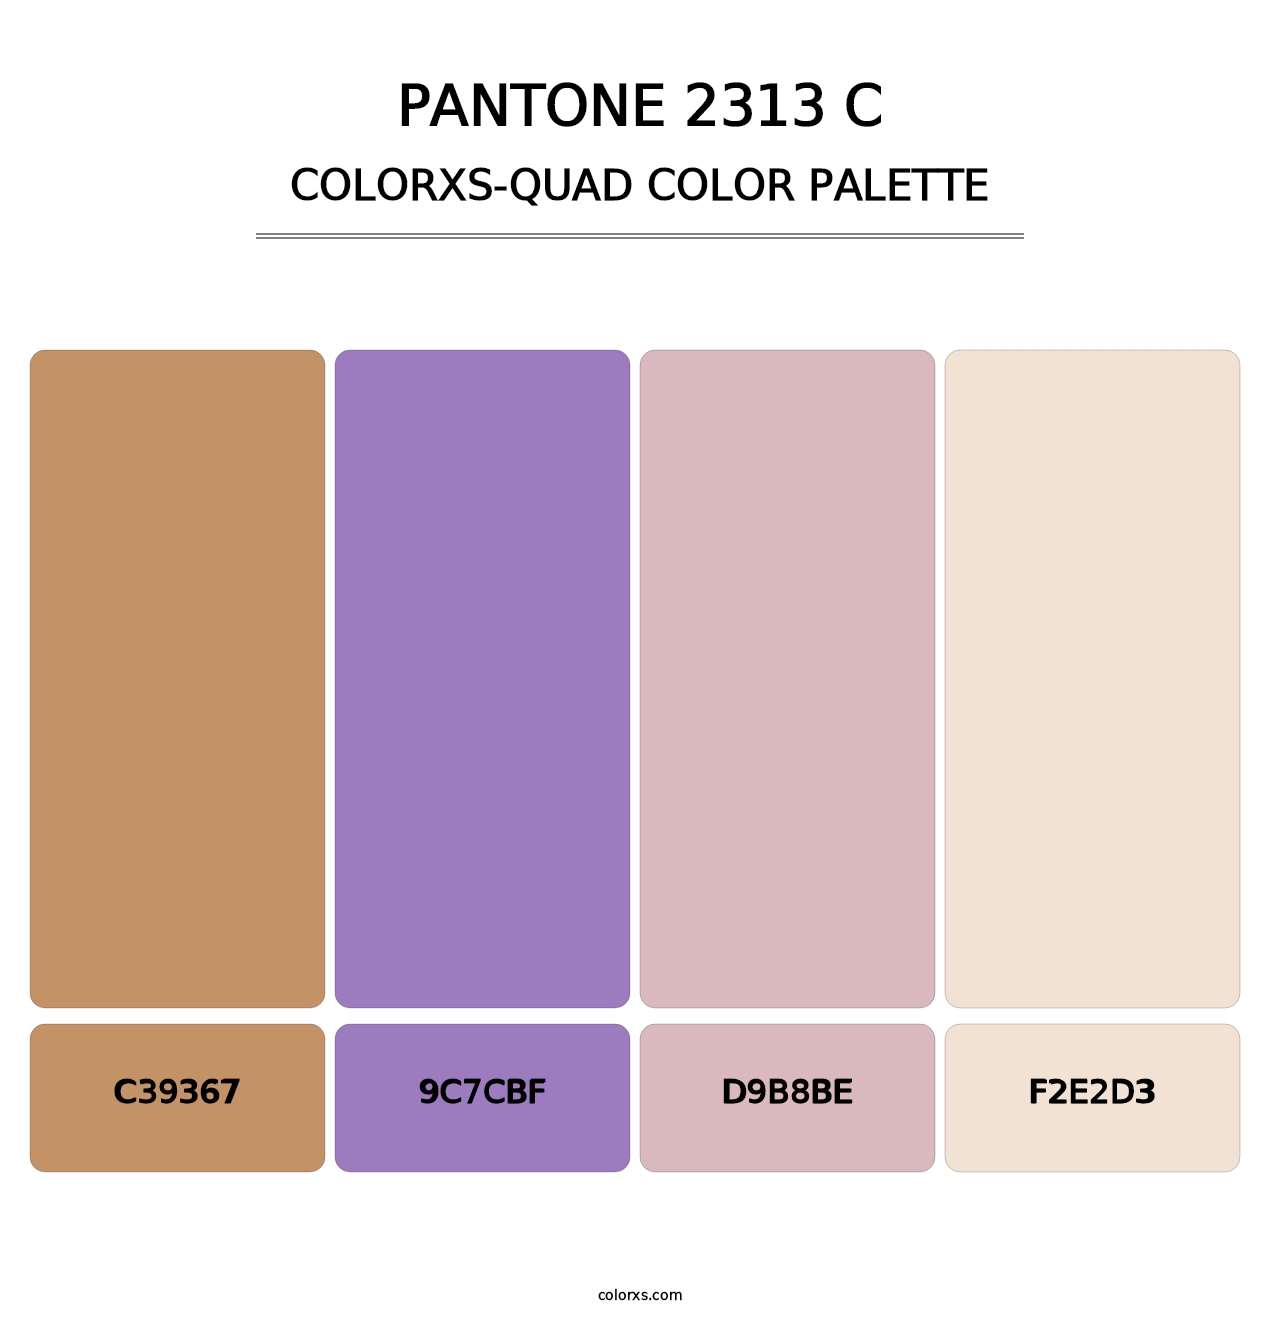 PANTONE 2313 C - Colorxs Quad Palette